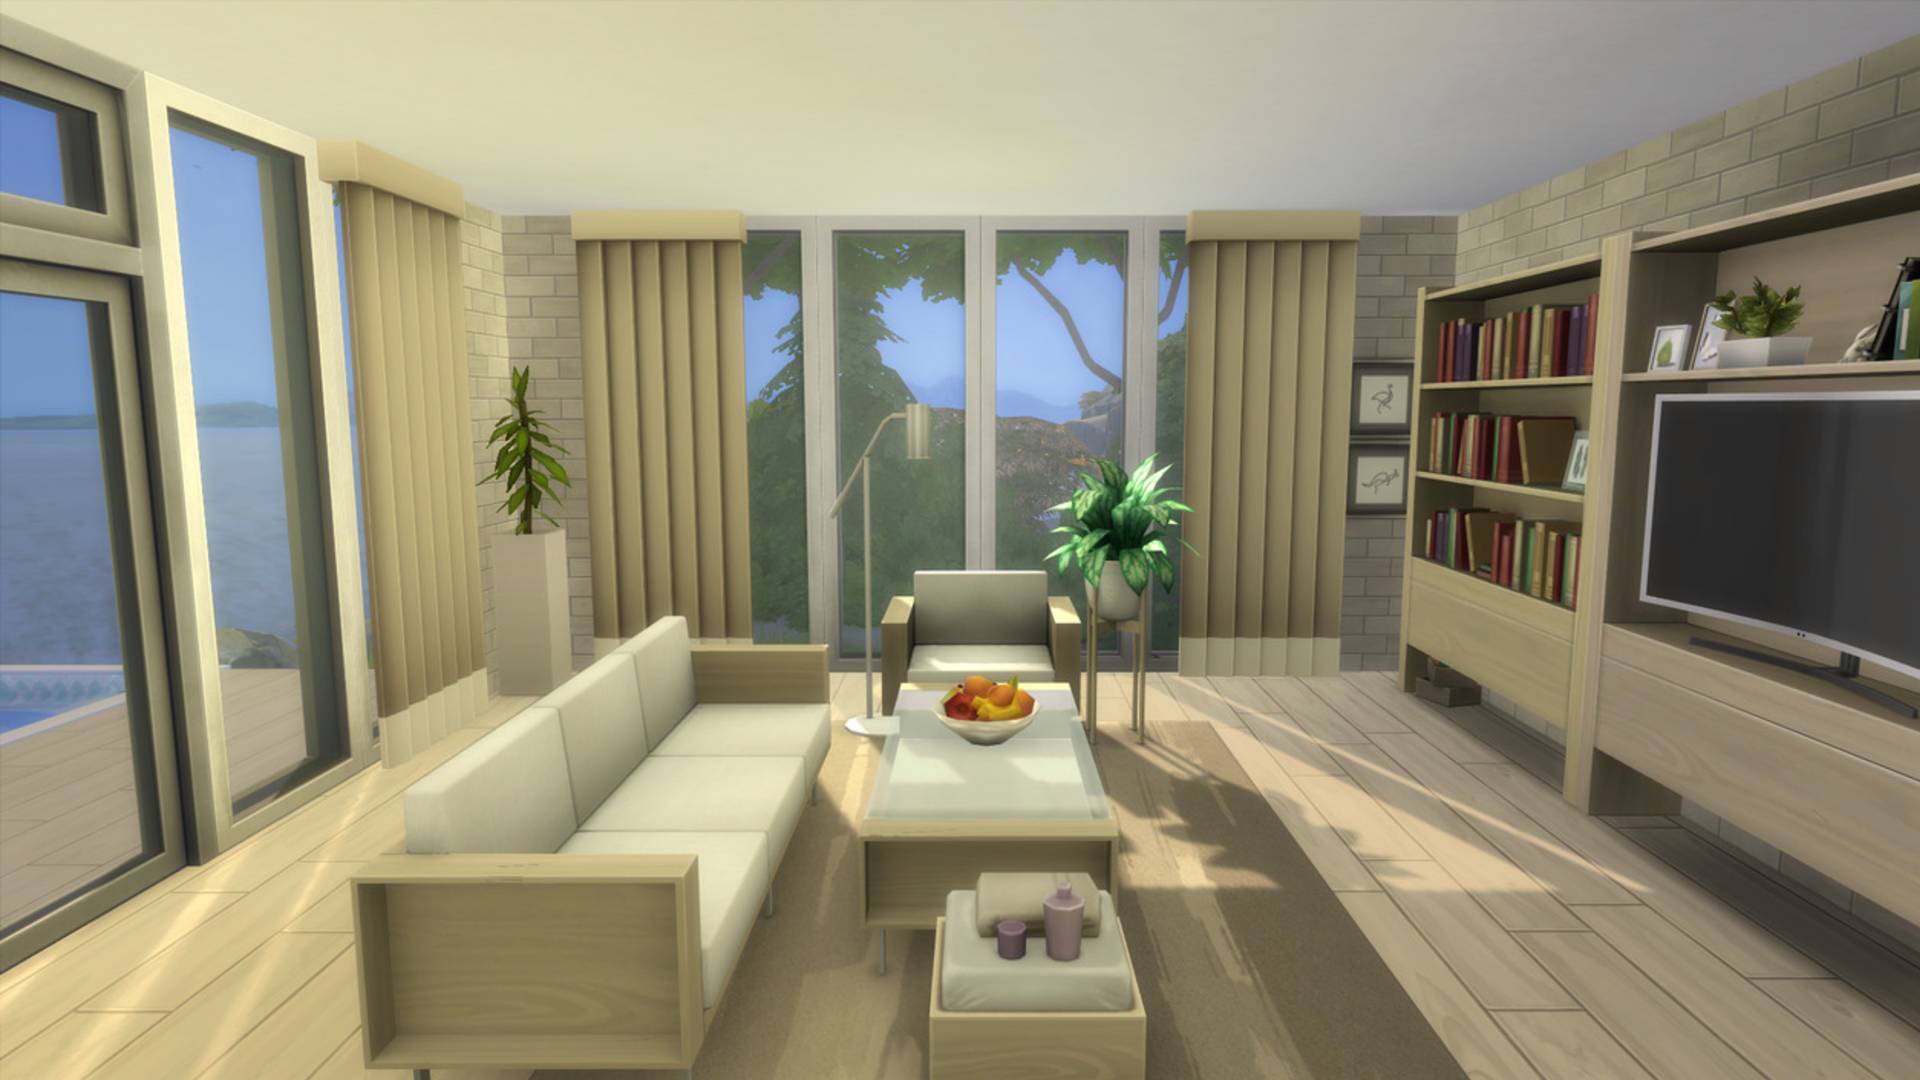 Sims 4 CC: una sala de estar elegante y minimalista en color hueso, con una estantería con libros y un televisor grande.